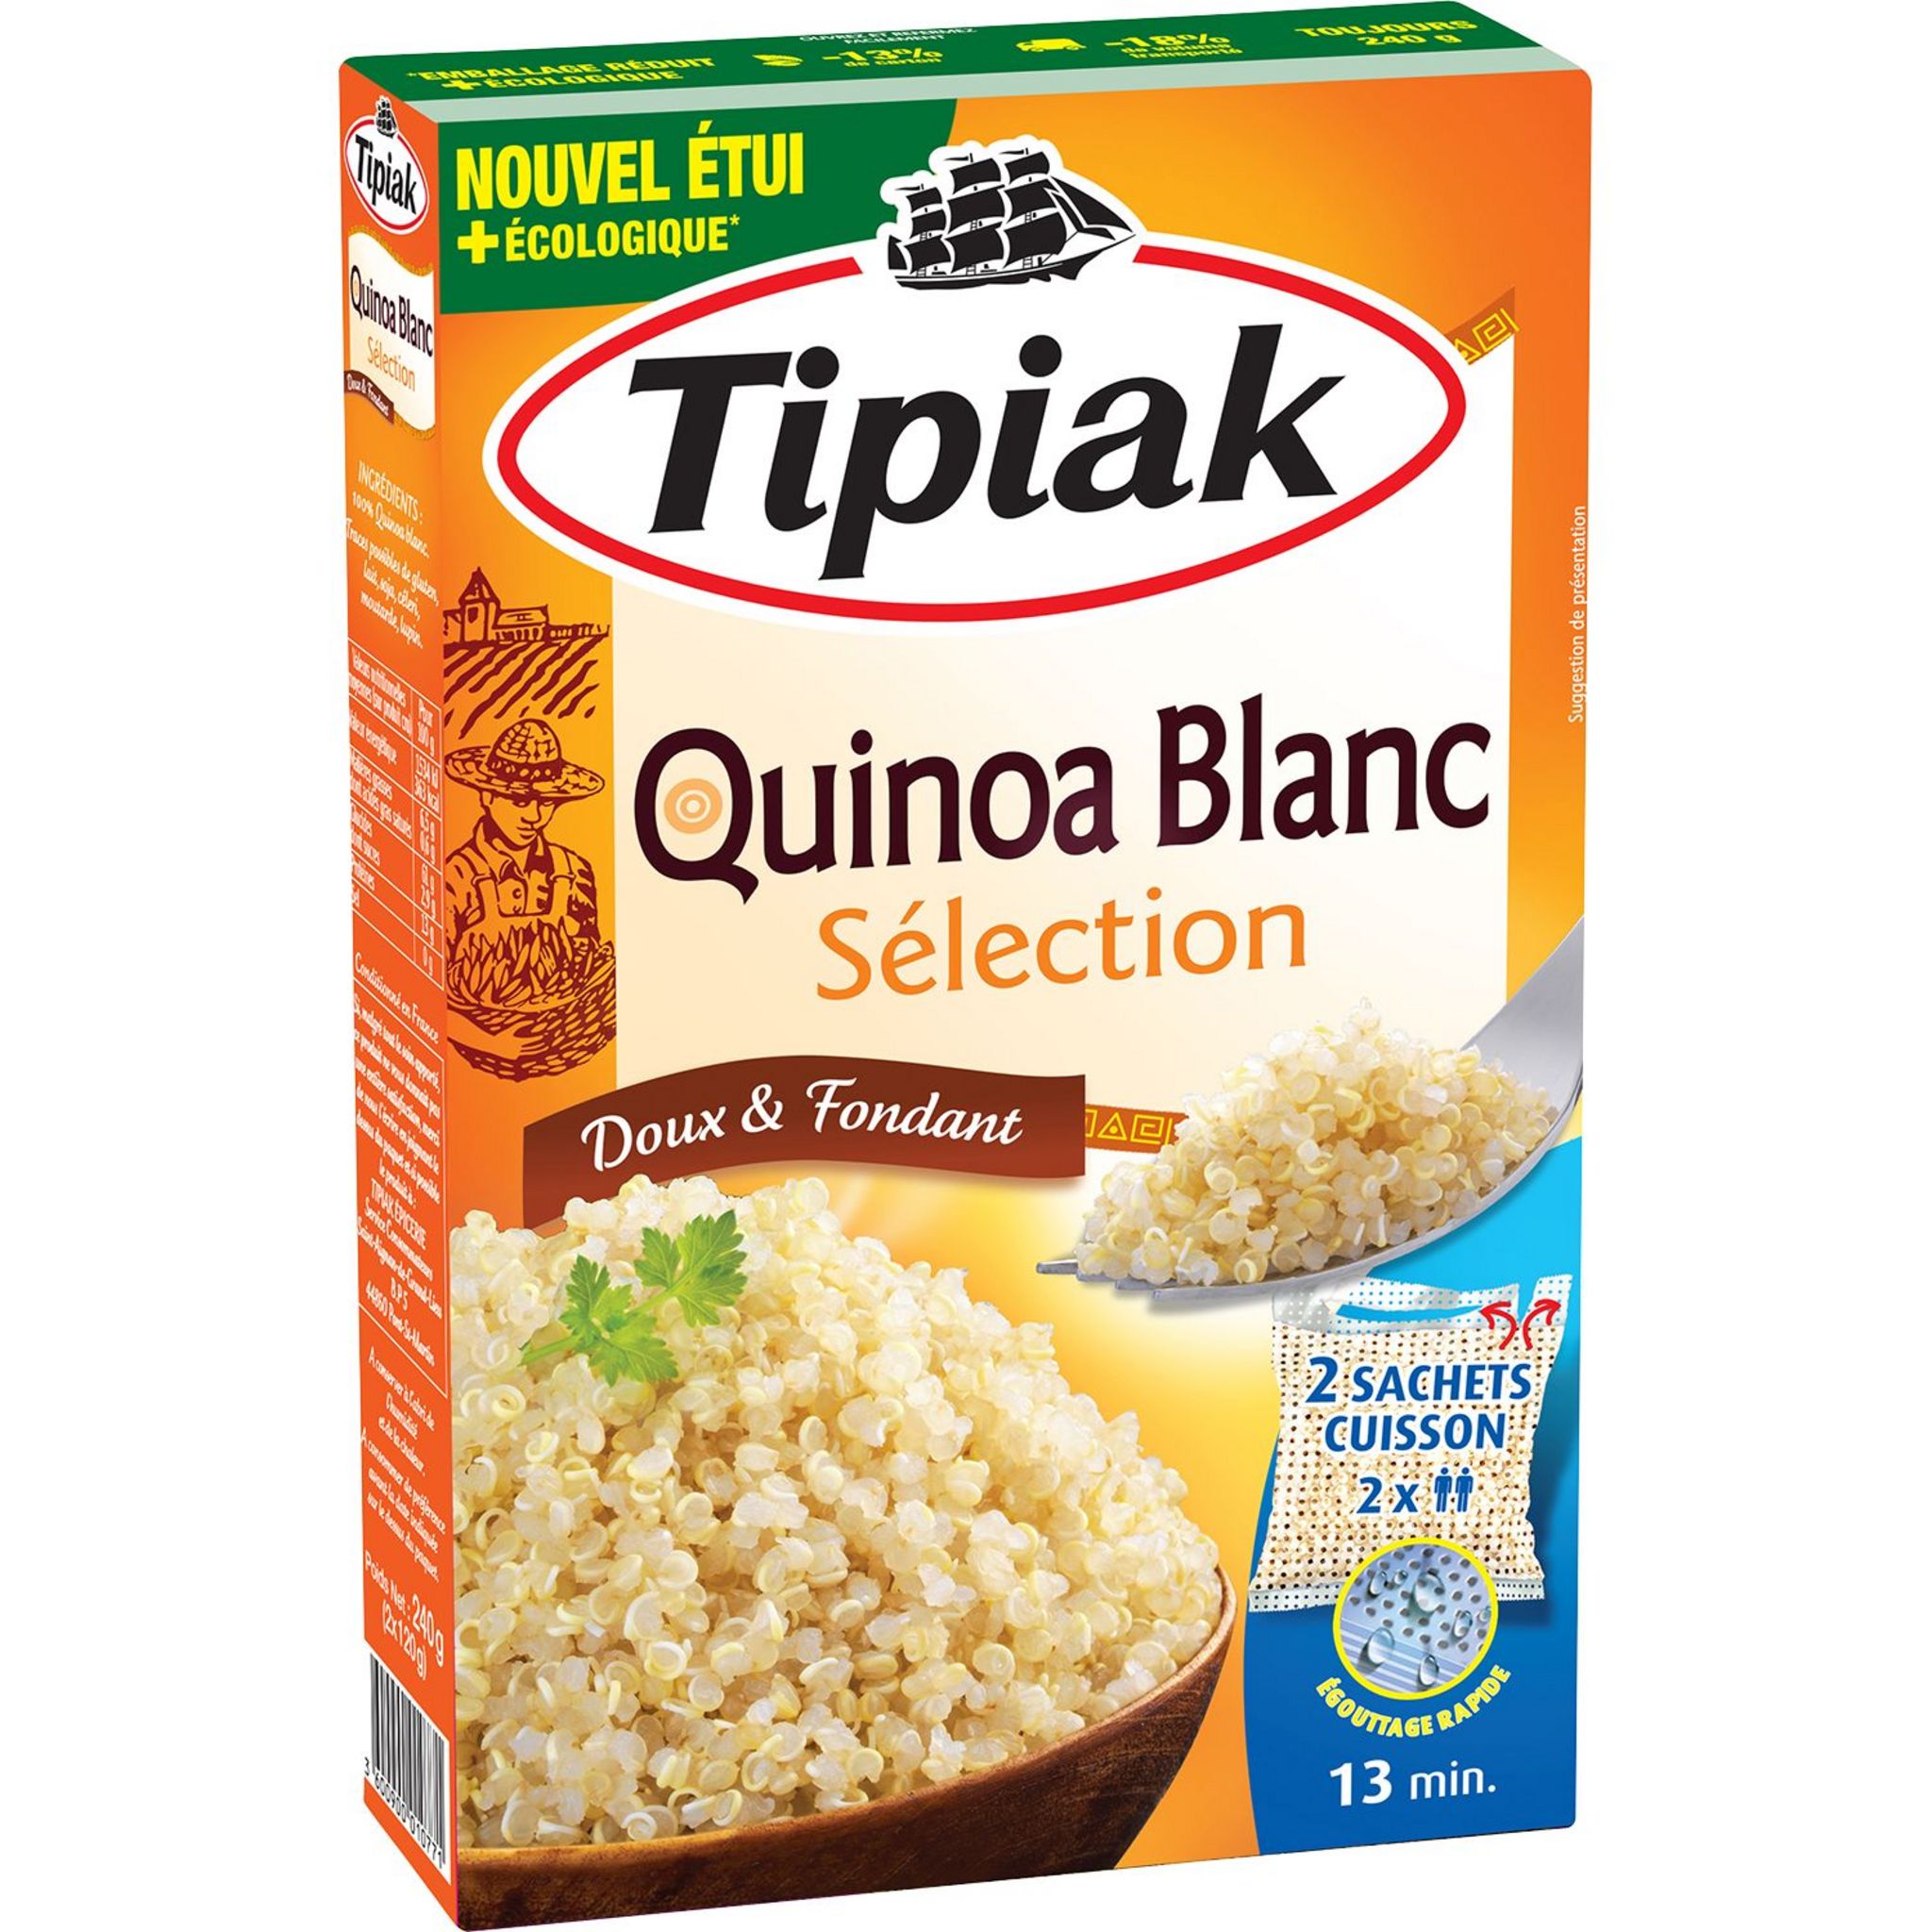 TIPIAK Quinoa blanc sélection doux et fondant, sachet cuisson 13min 2  sachets 2x120g pas cher 